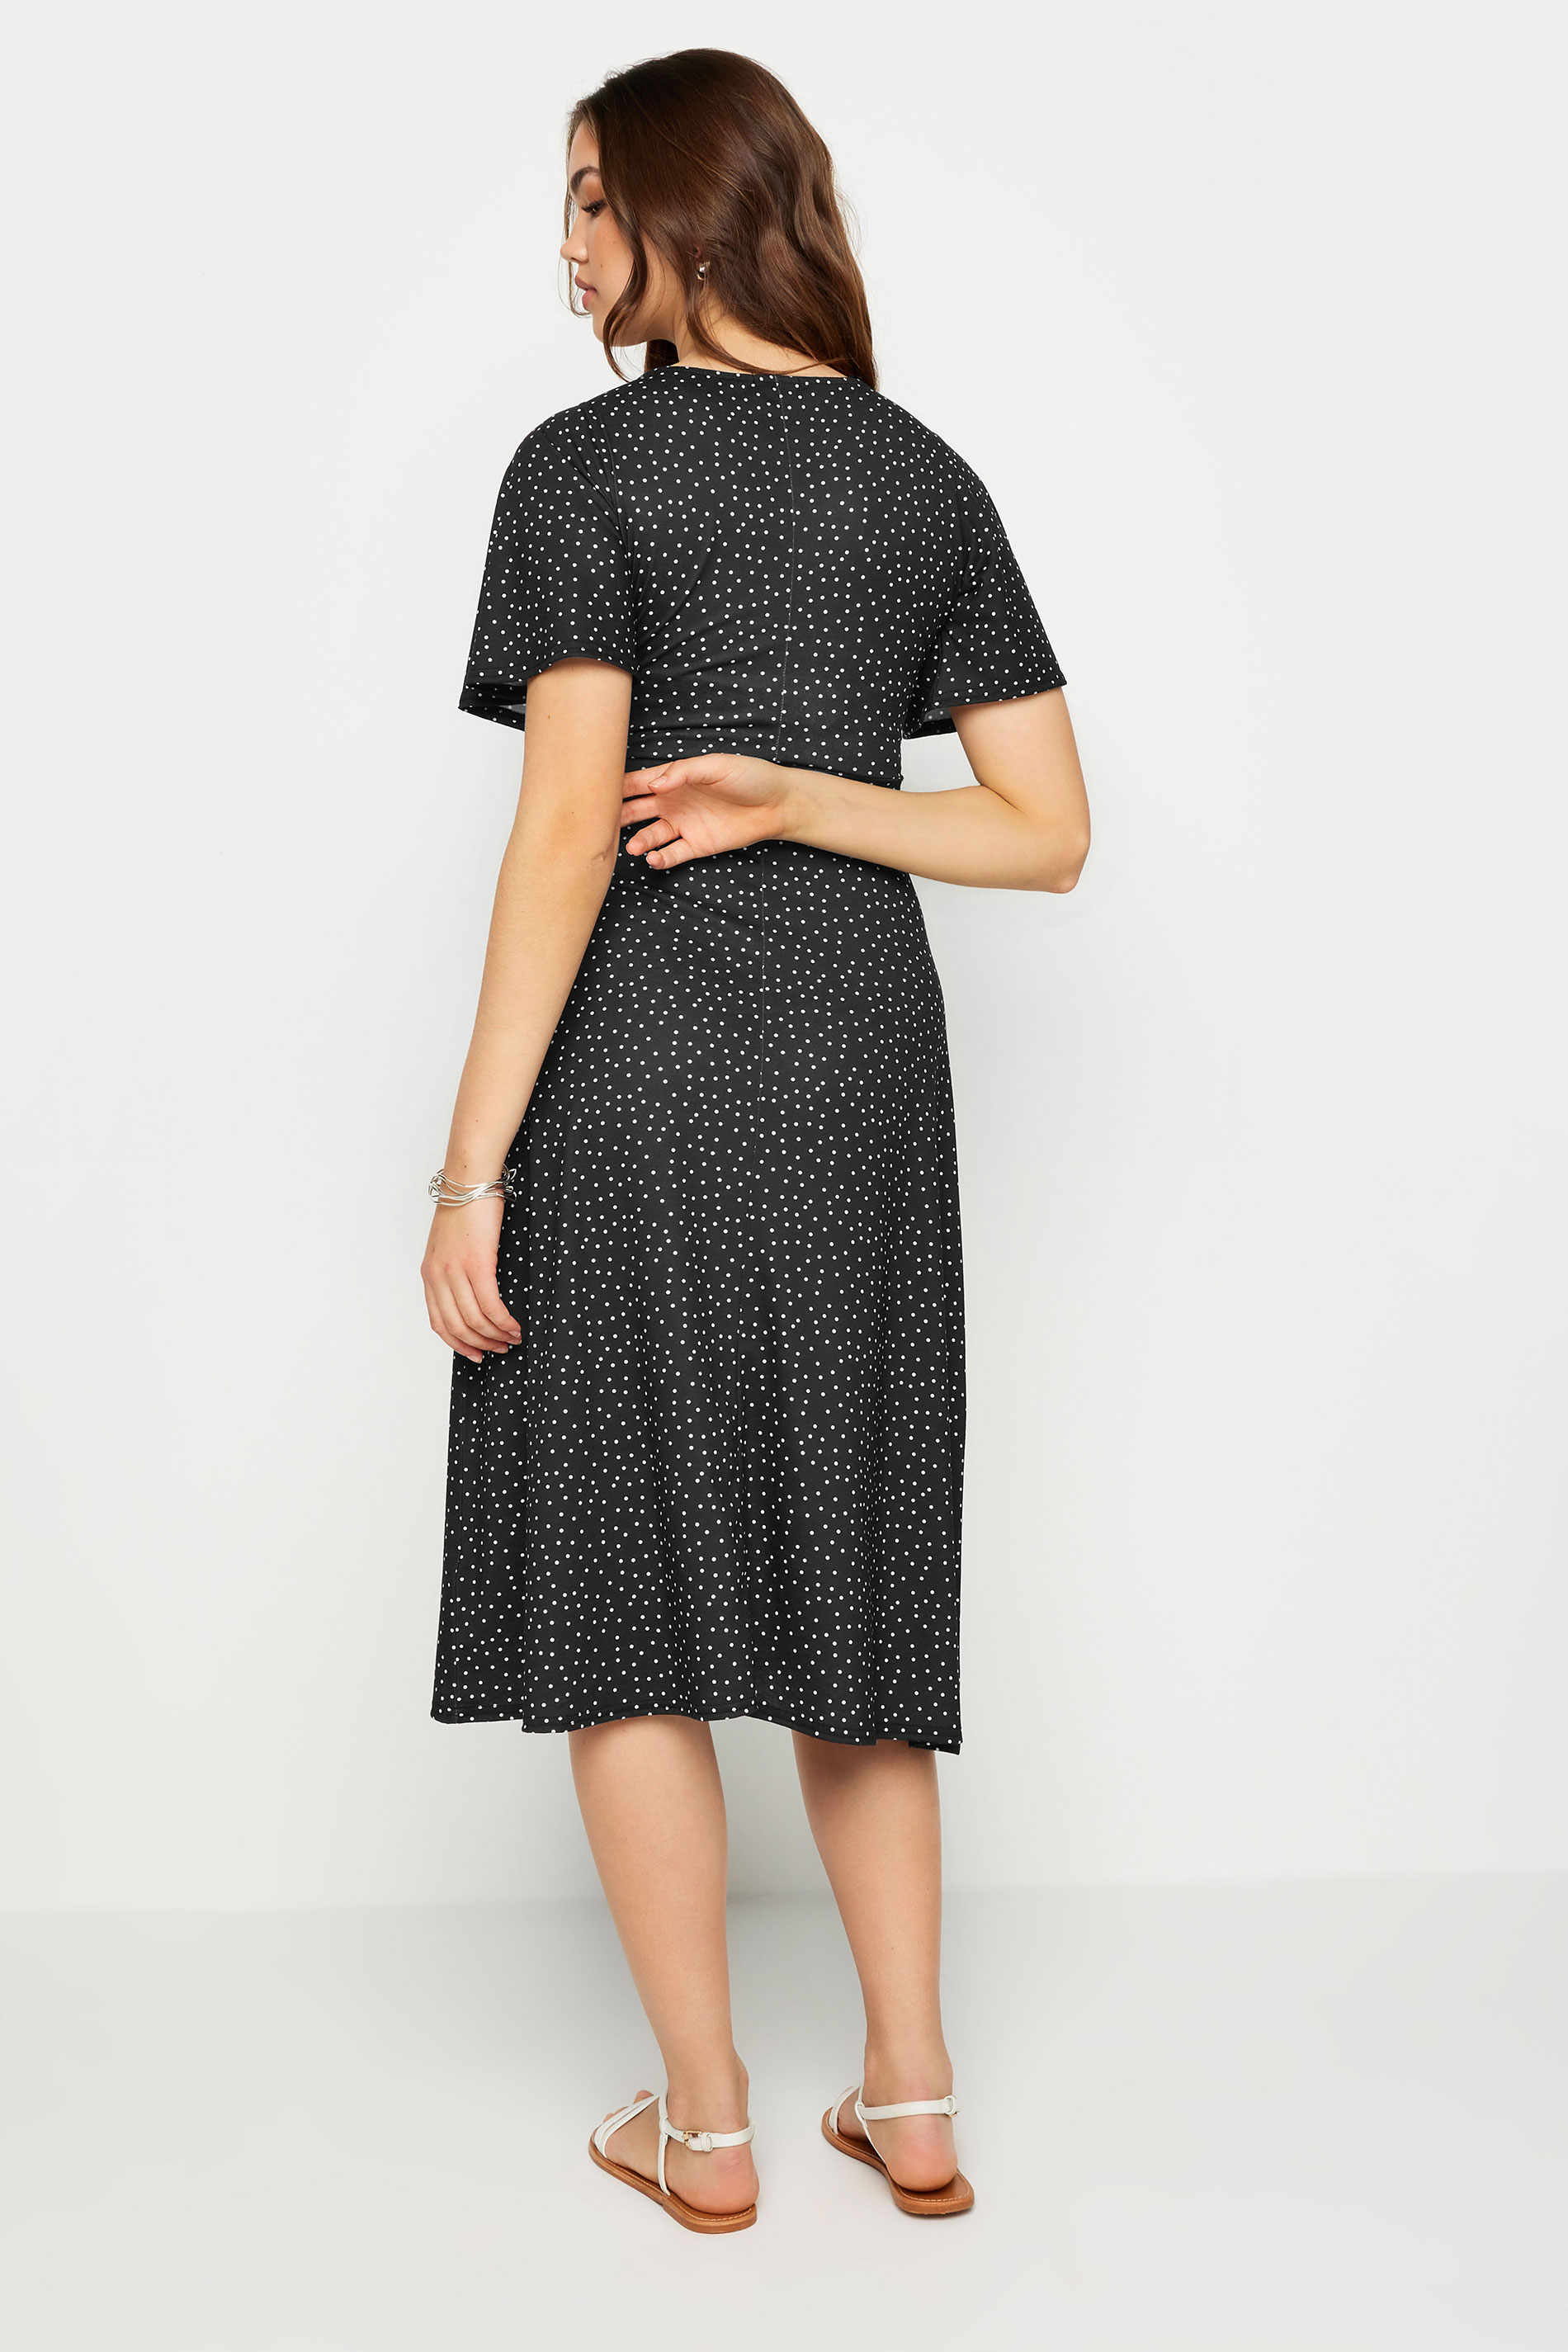 LTS Tall Women's Black Spot Print Midi Dress | Long Tall Sally 3